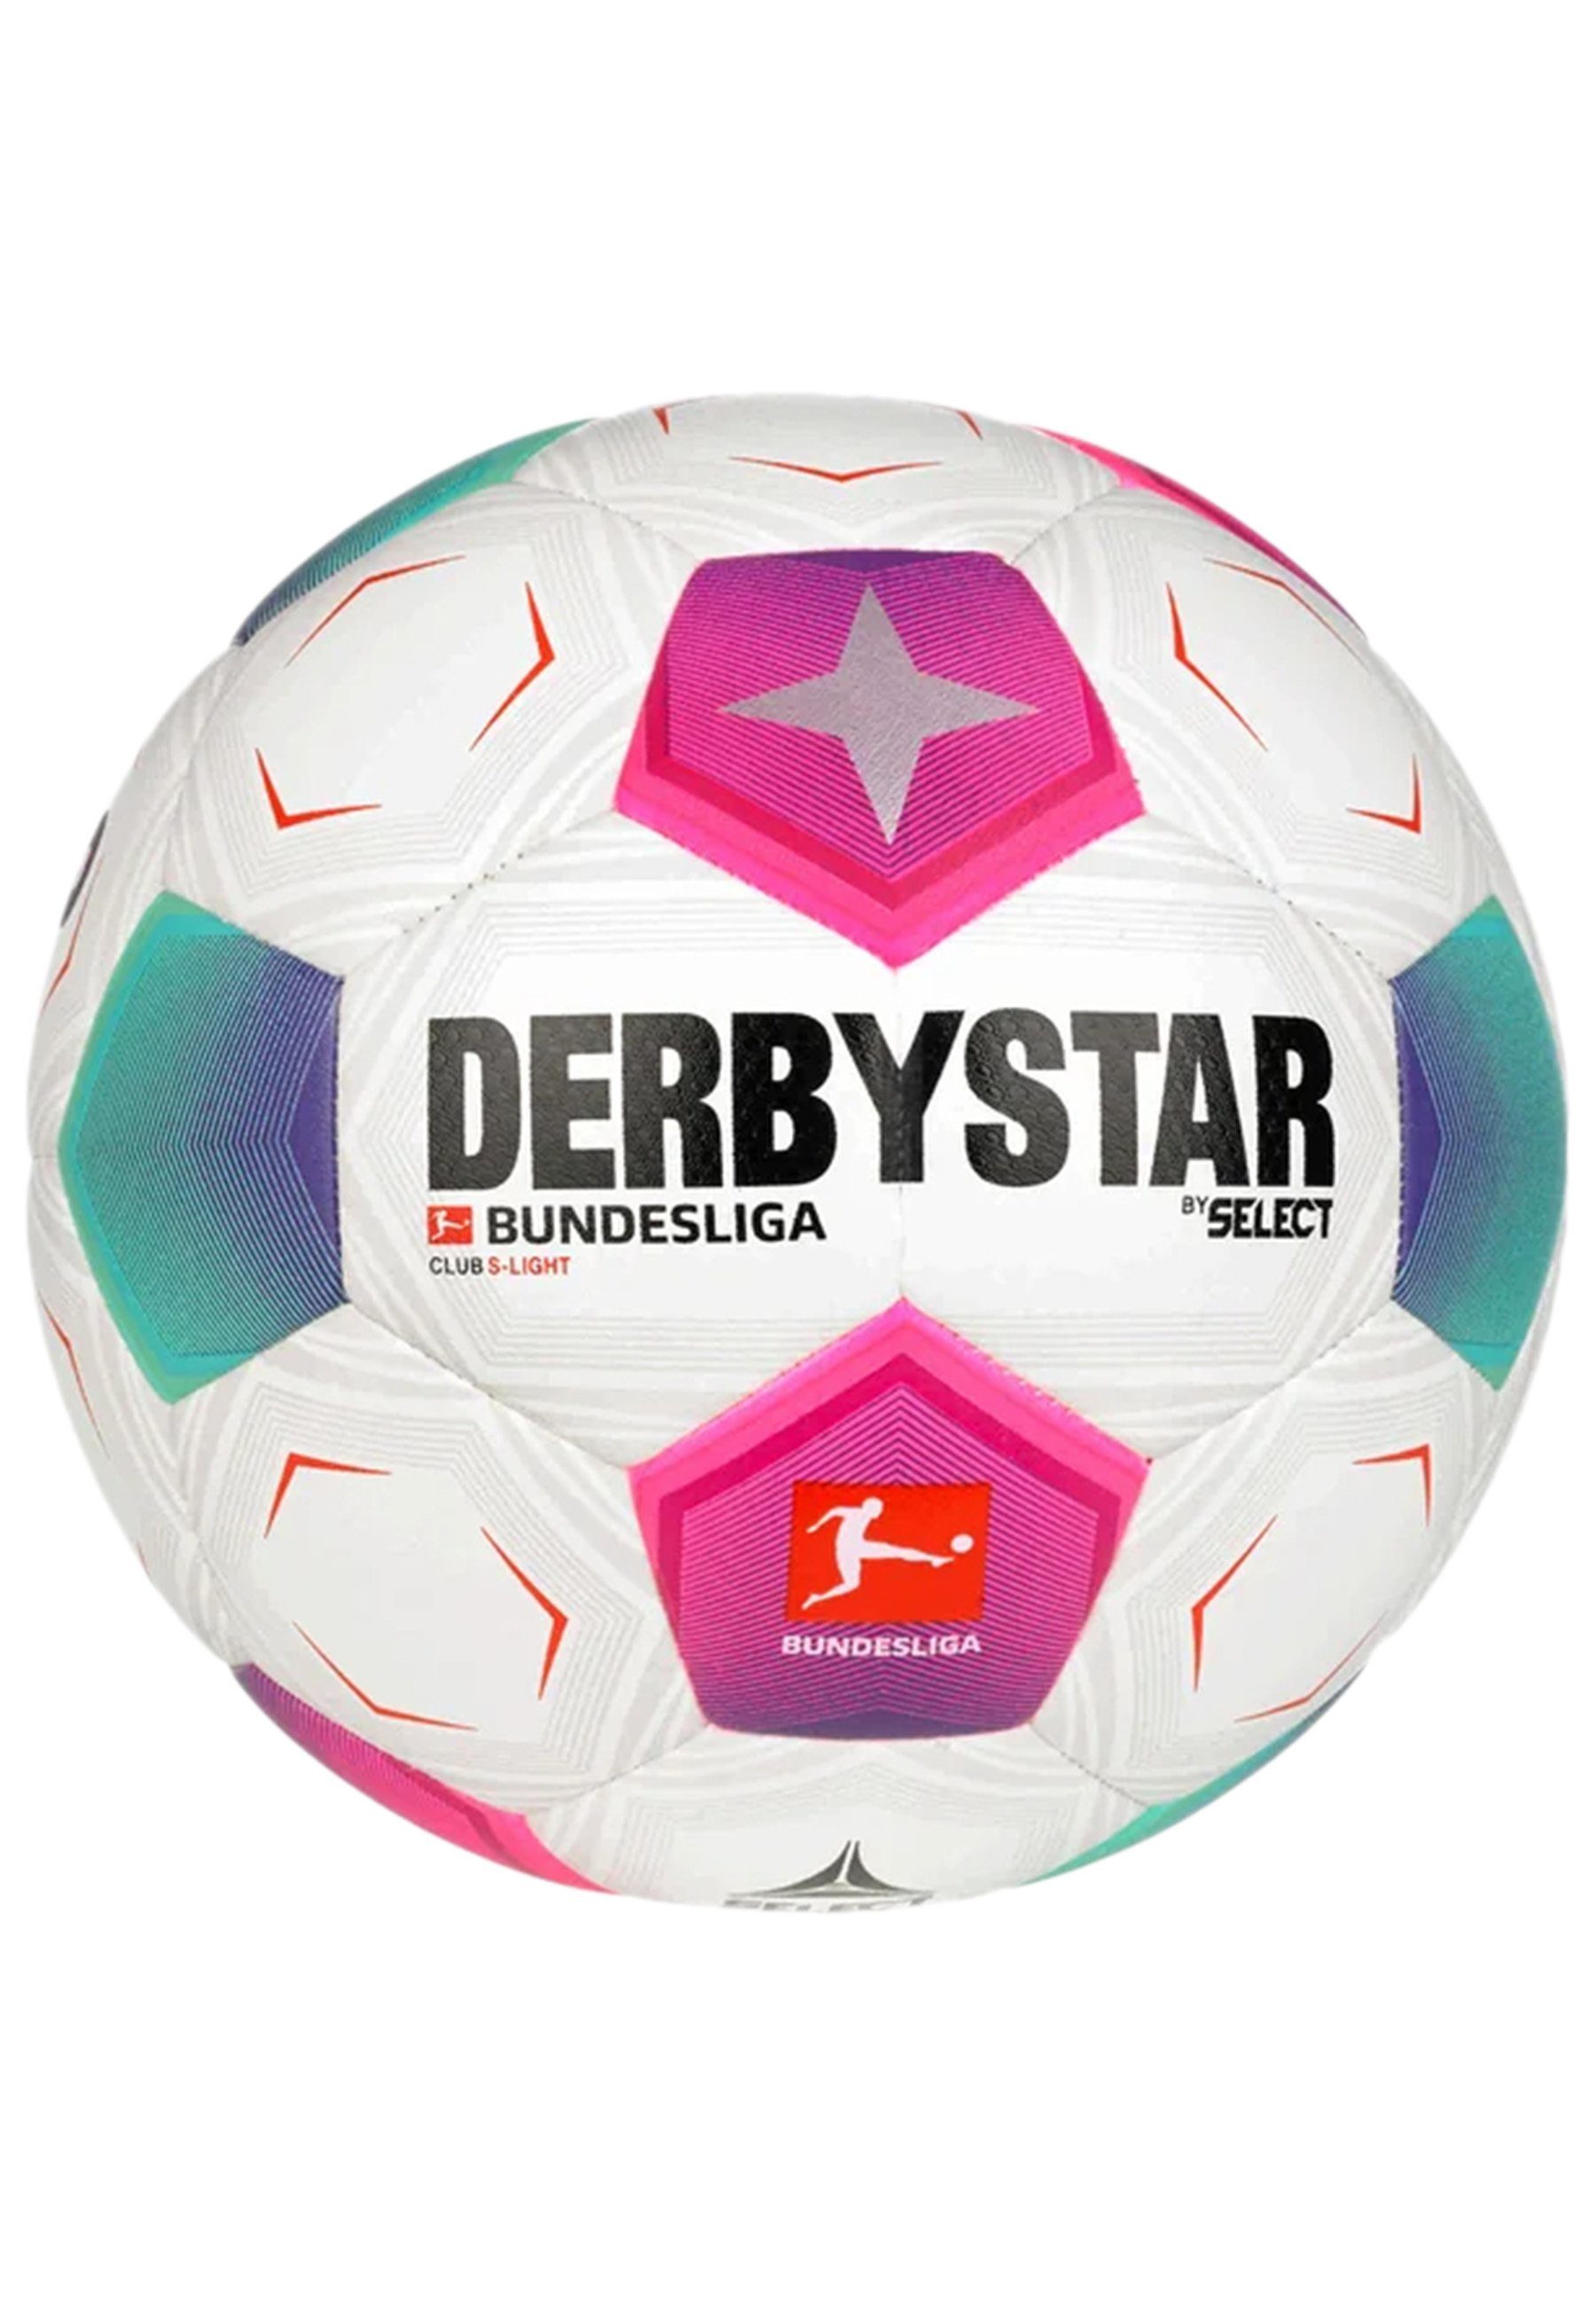 Club Bundesliga Fußball Derbystar S-Light